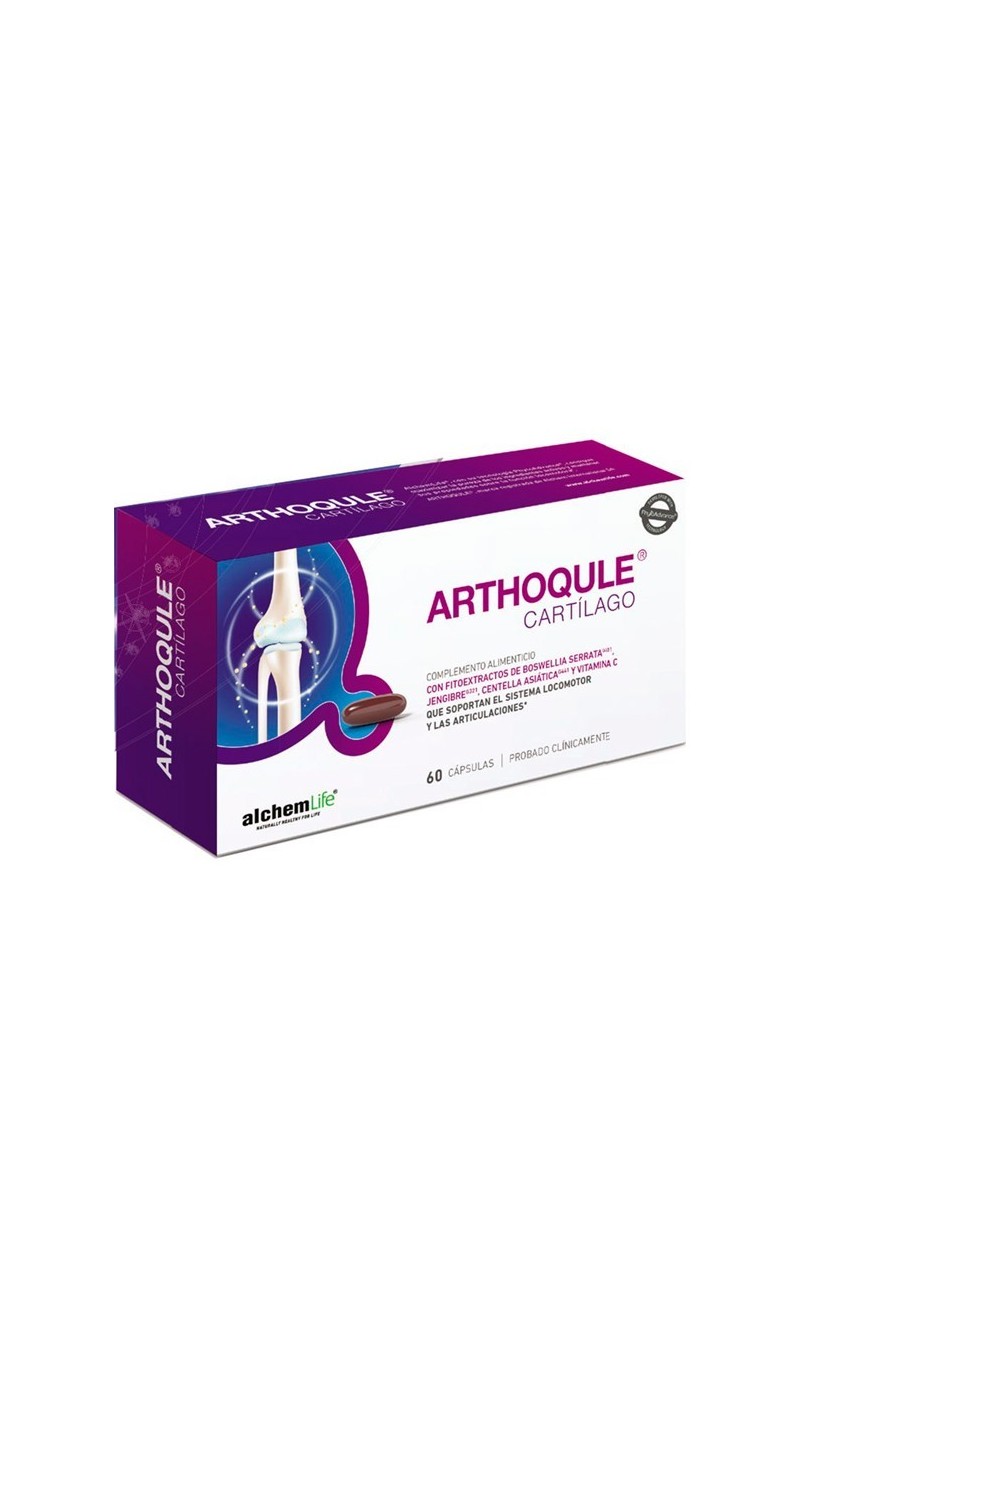 Alchemlife Arthoqule Cartilage 60 Capsules